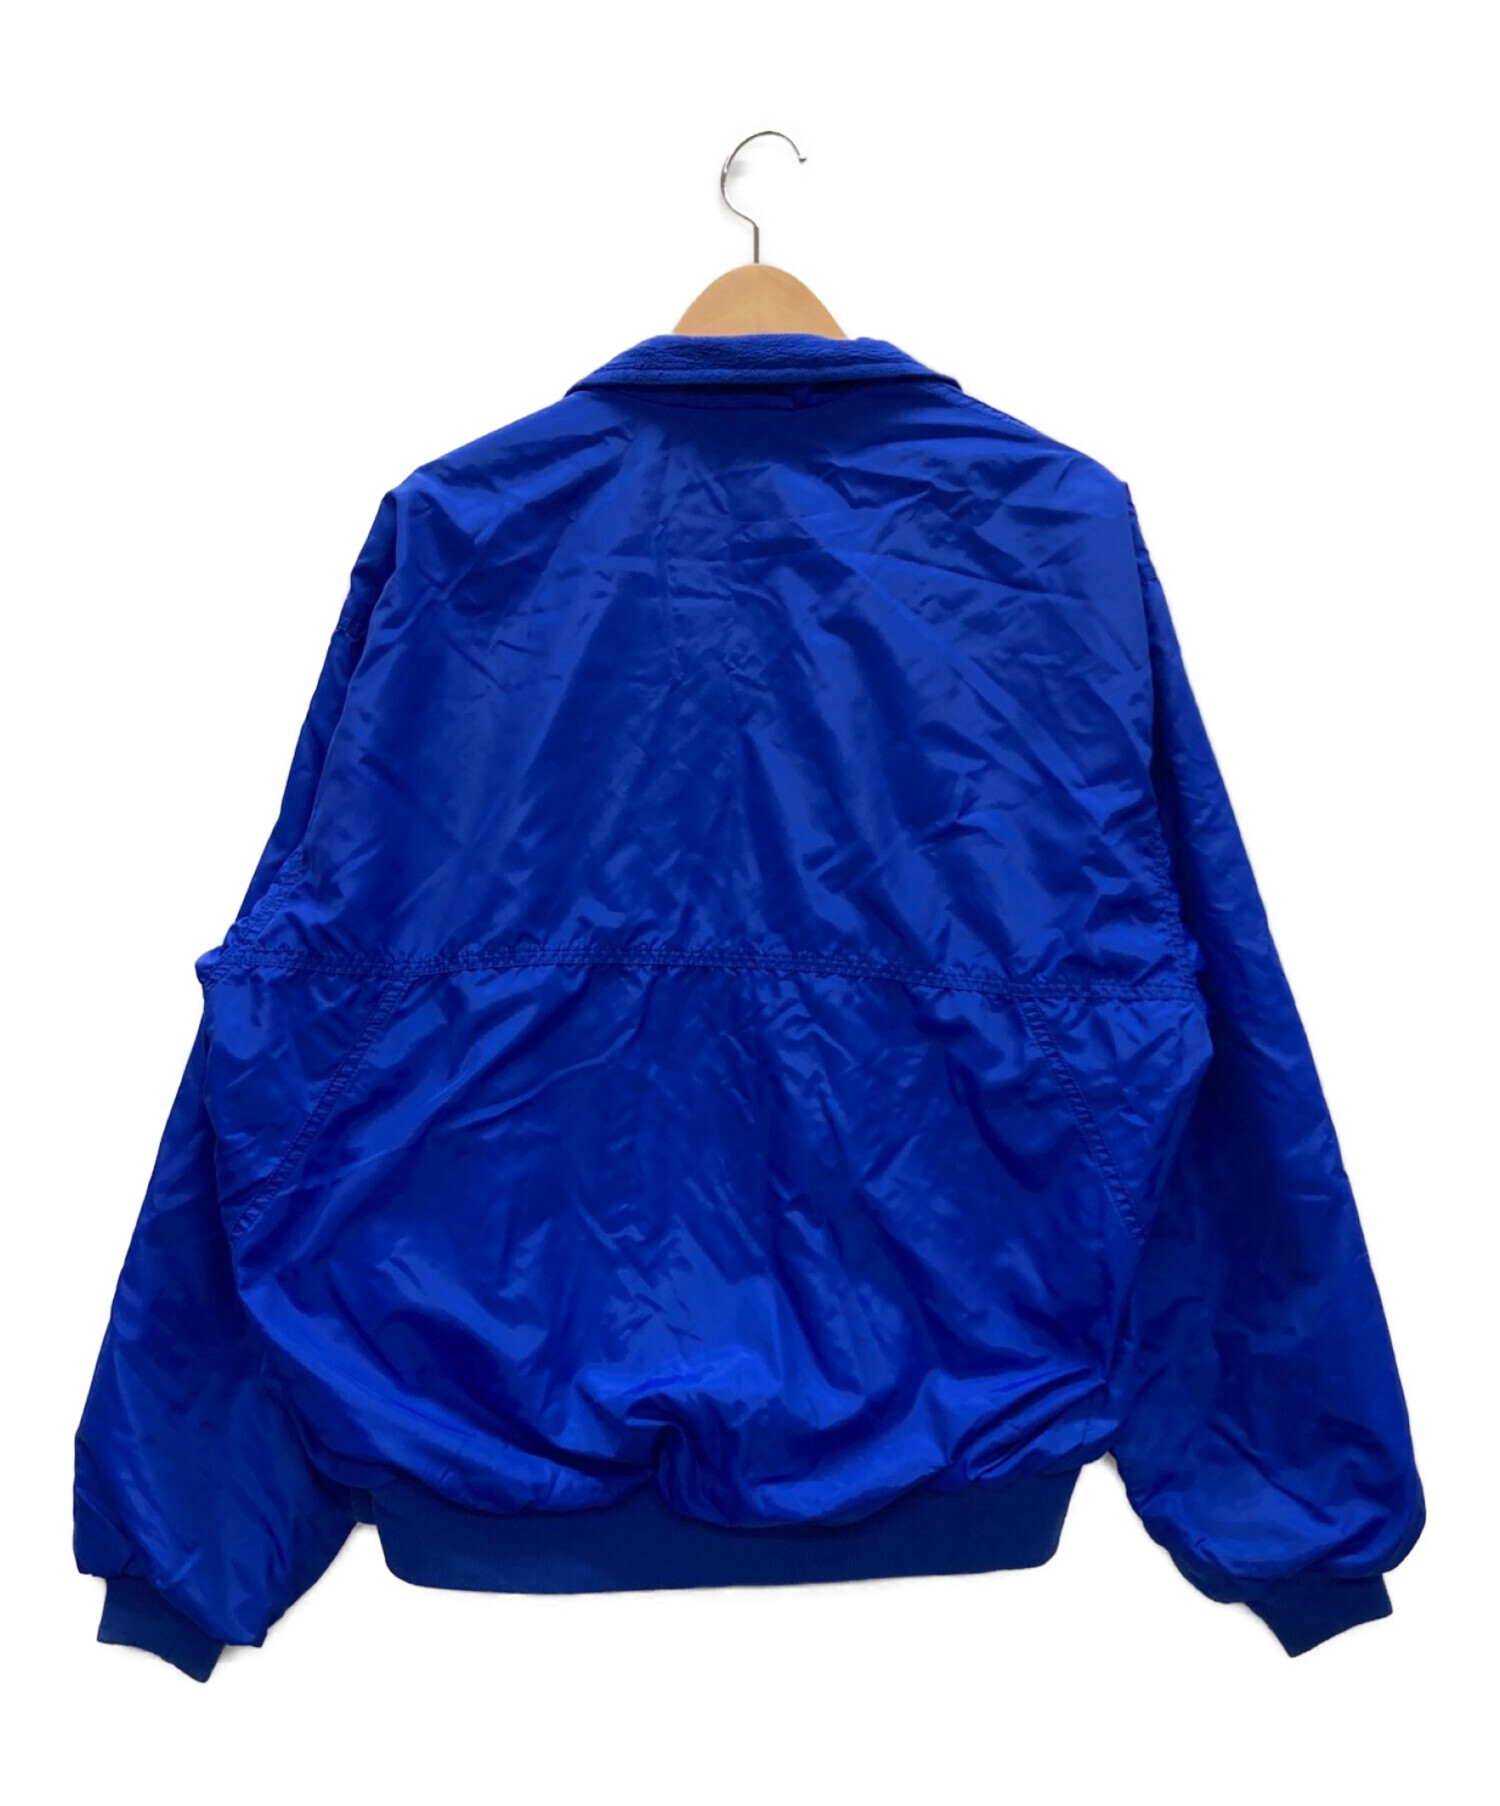 Patagonia (パタゴニア) シェルドシンチラジャケット ブルー サイズ:L